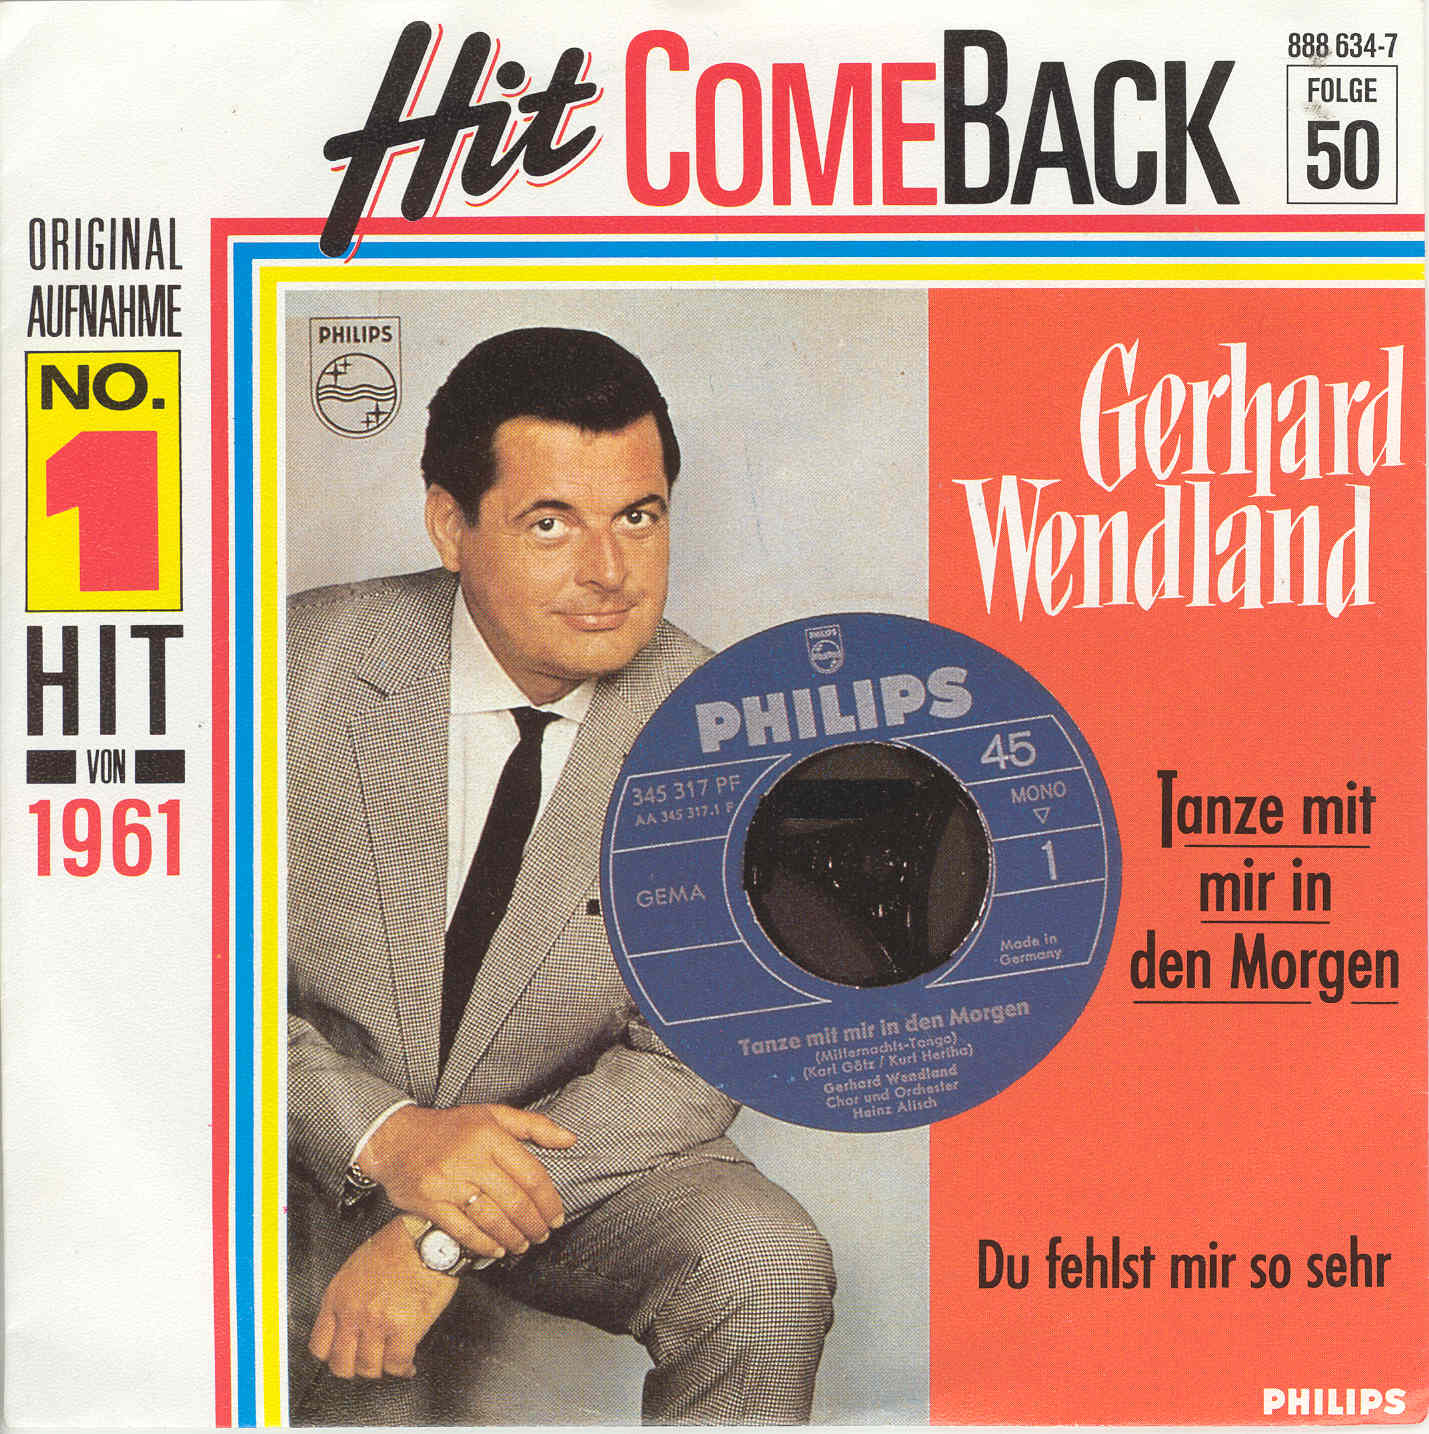 Wendland Gerhard - Tanze mit mir in den Morgen (RI-HIT COMEBACK)